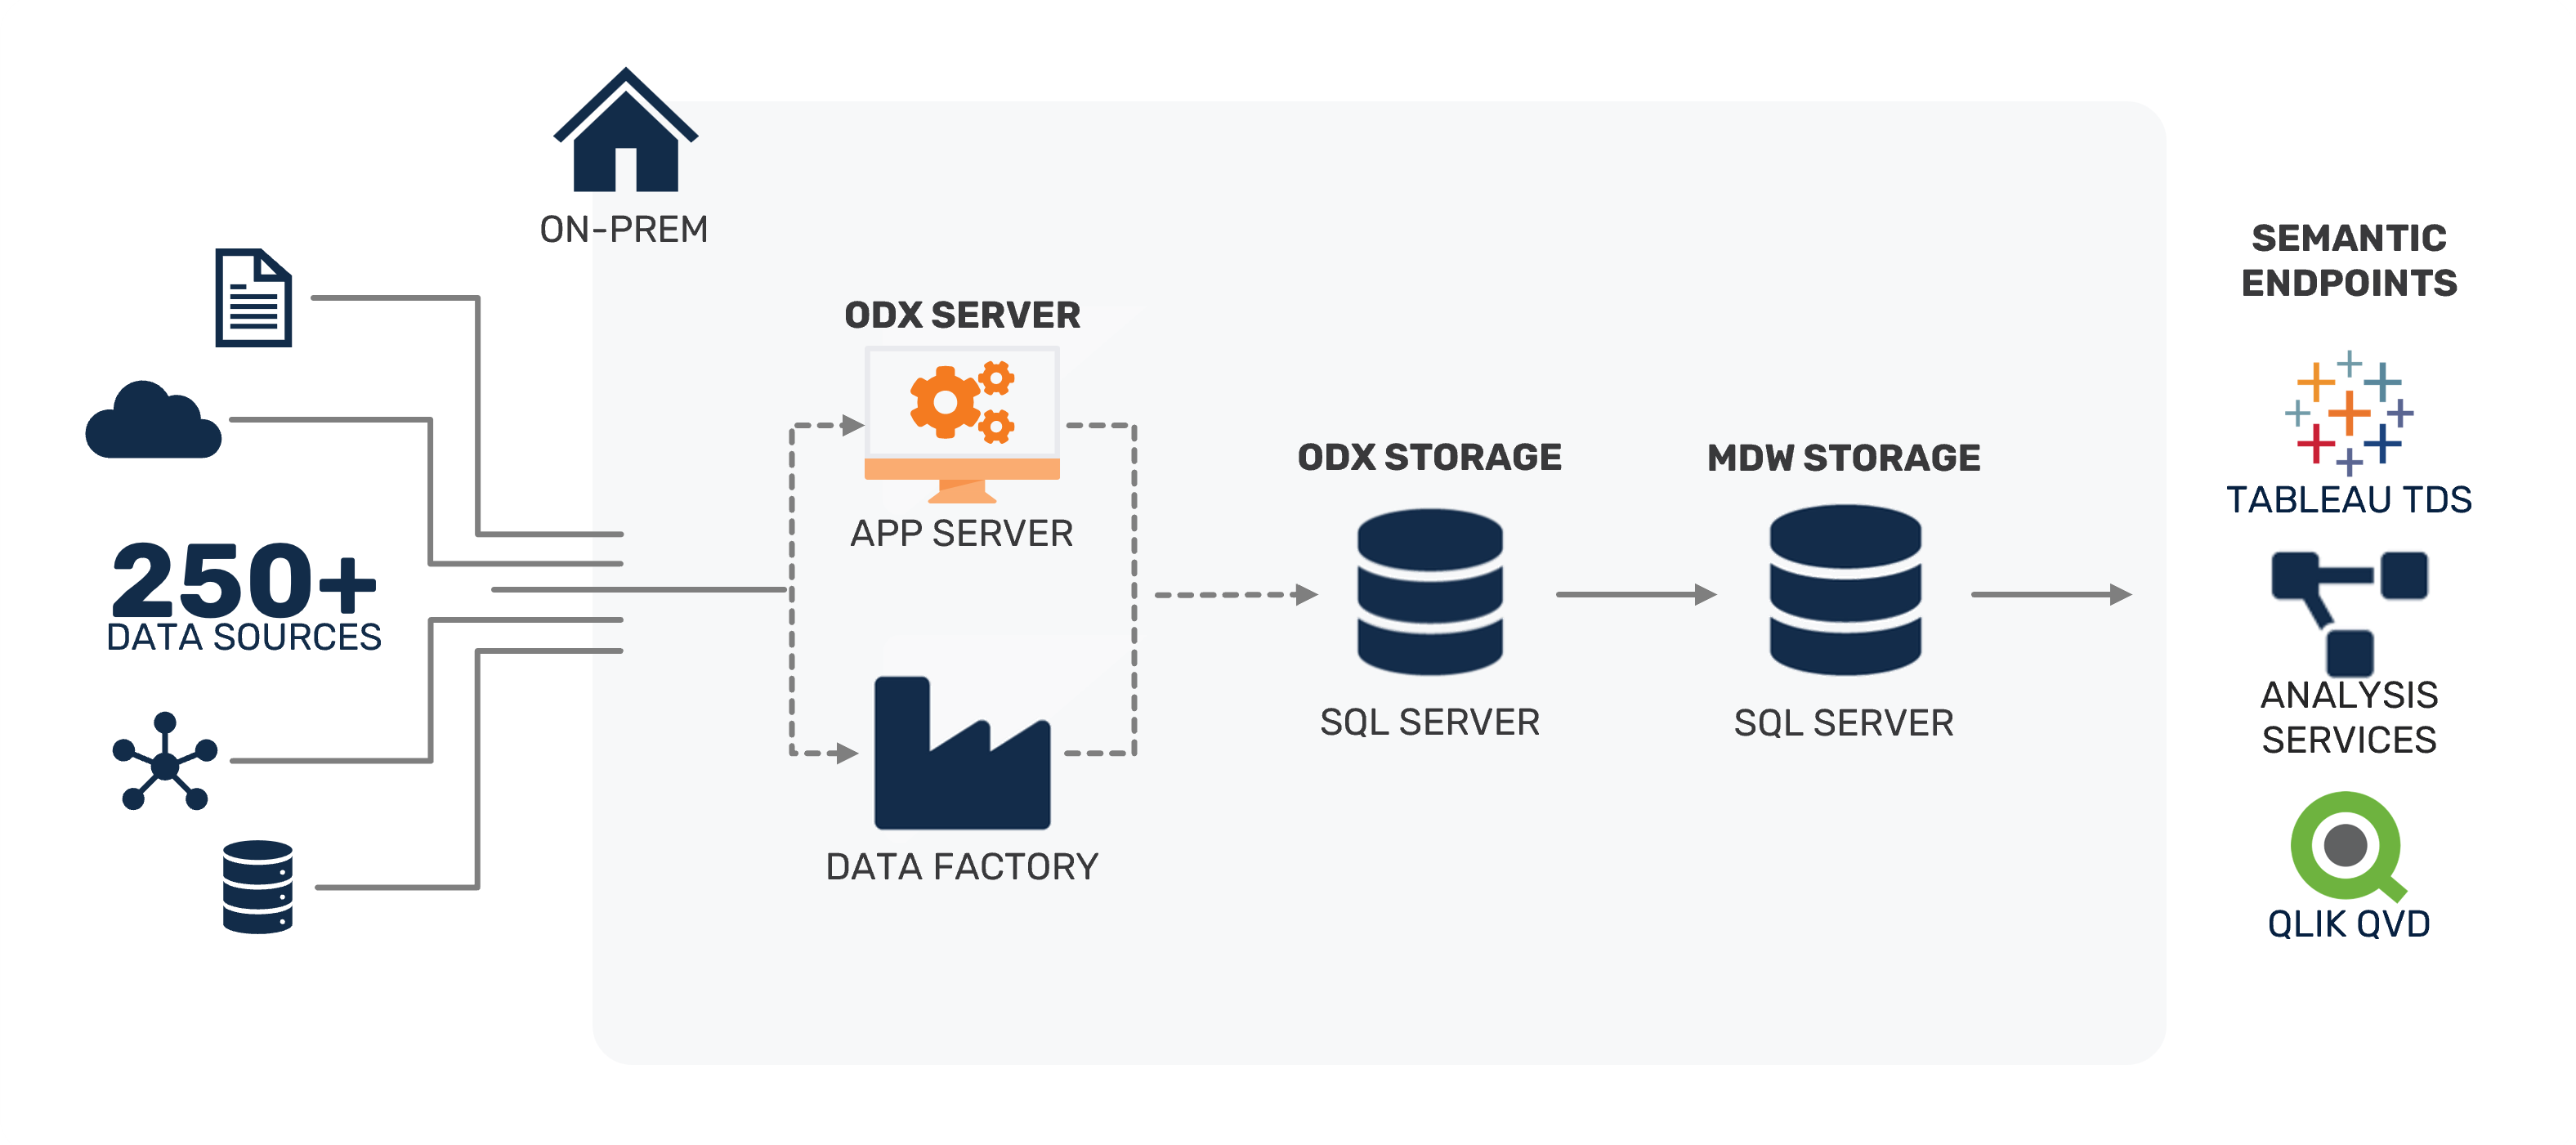 On-Prem SQL Server Reference Architecture